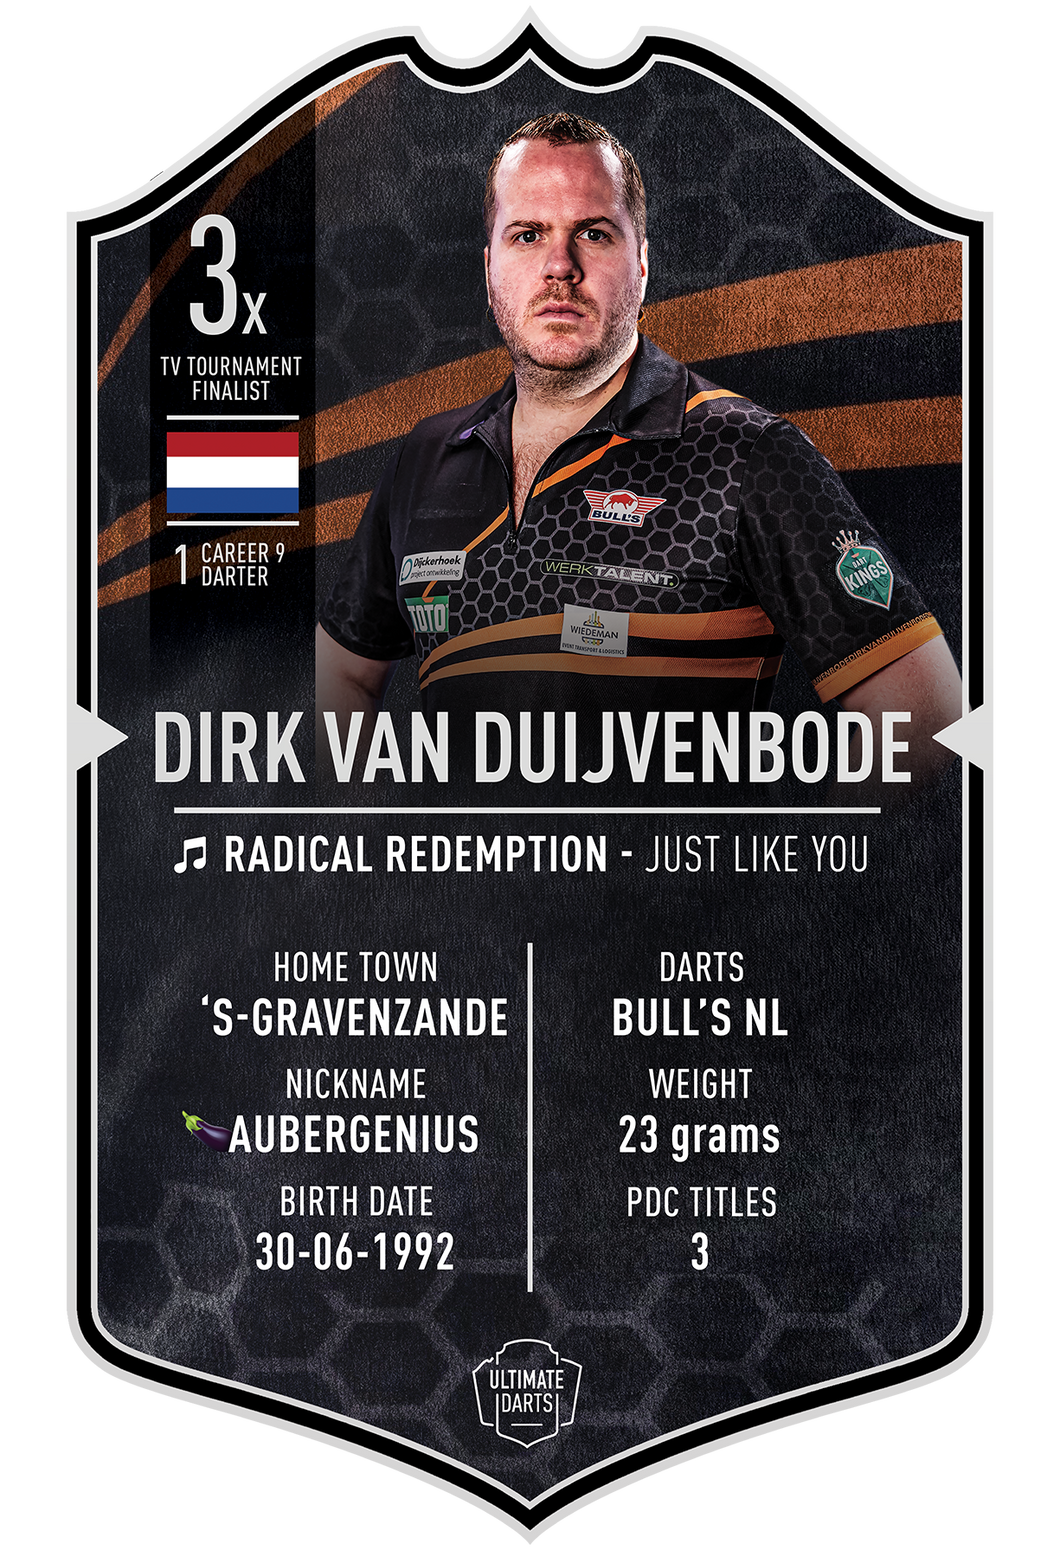 Ultimate Darts Dirk van Duijvenbode